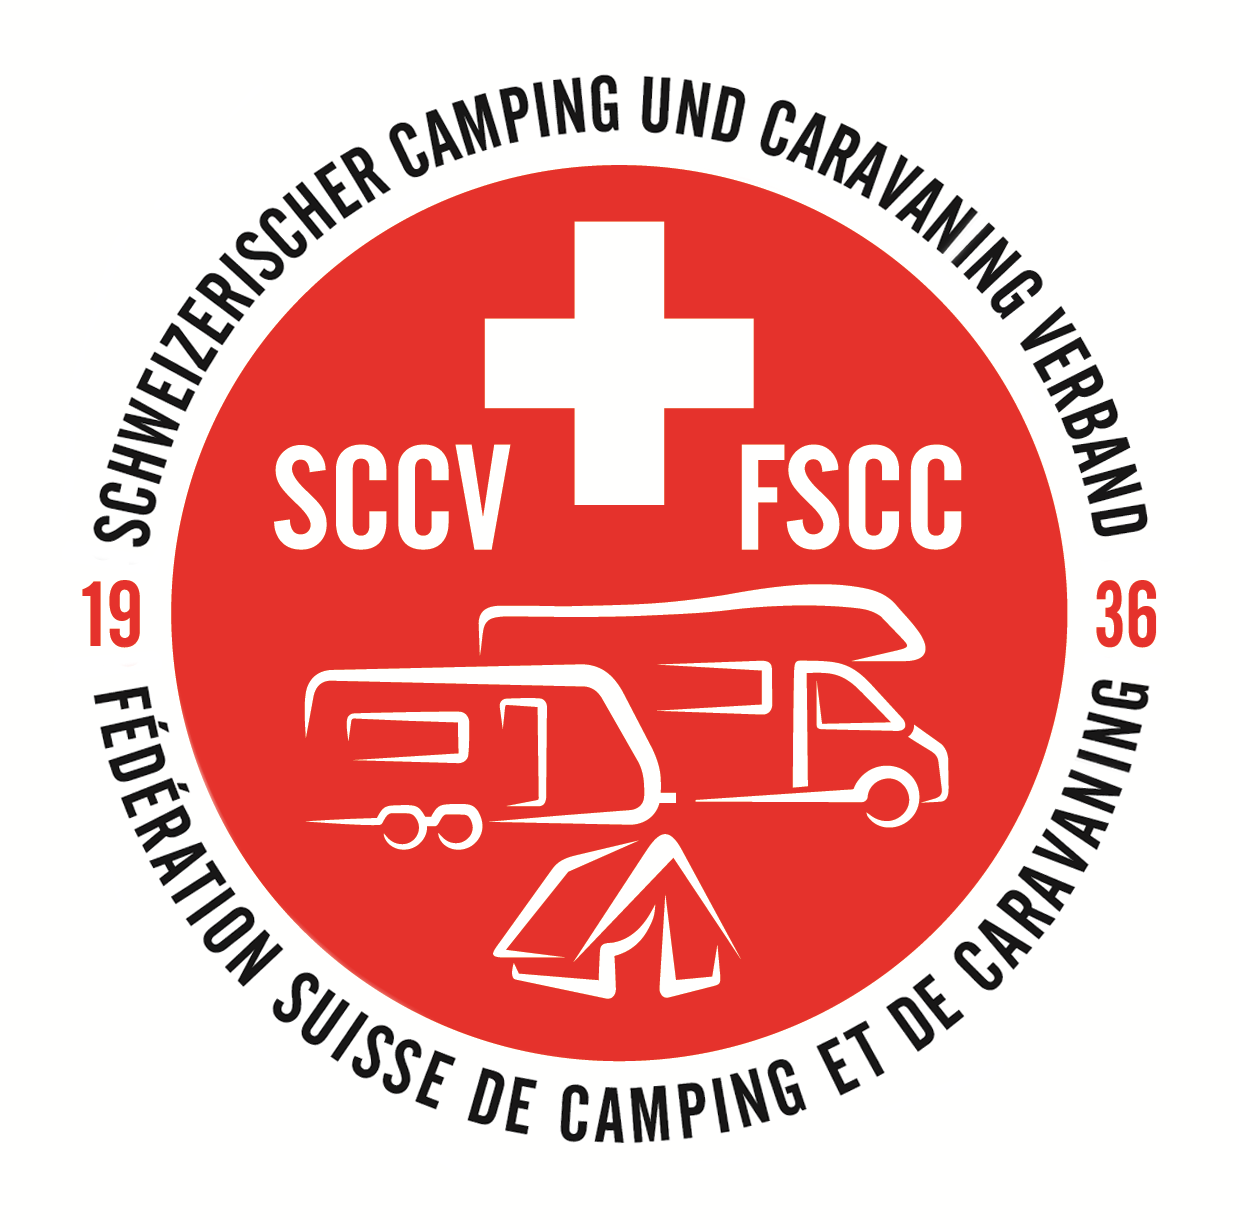 Schweizerischer Camping und Caravanning Verband